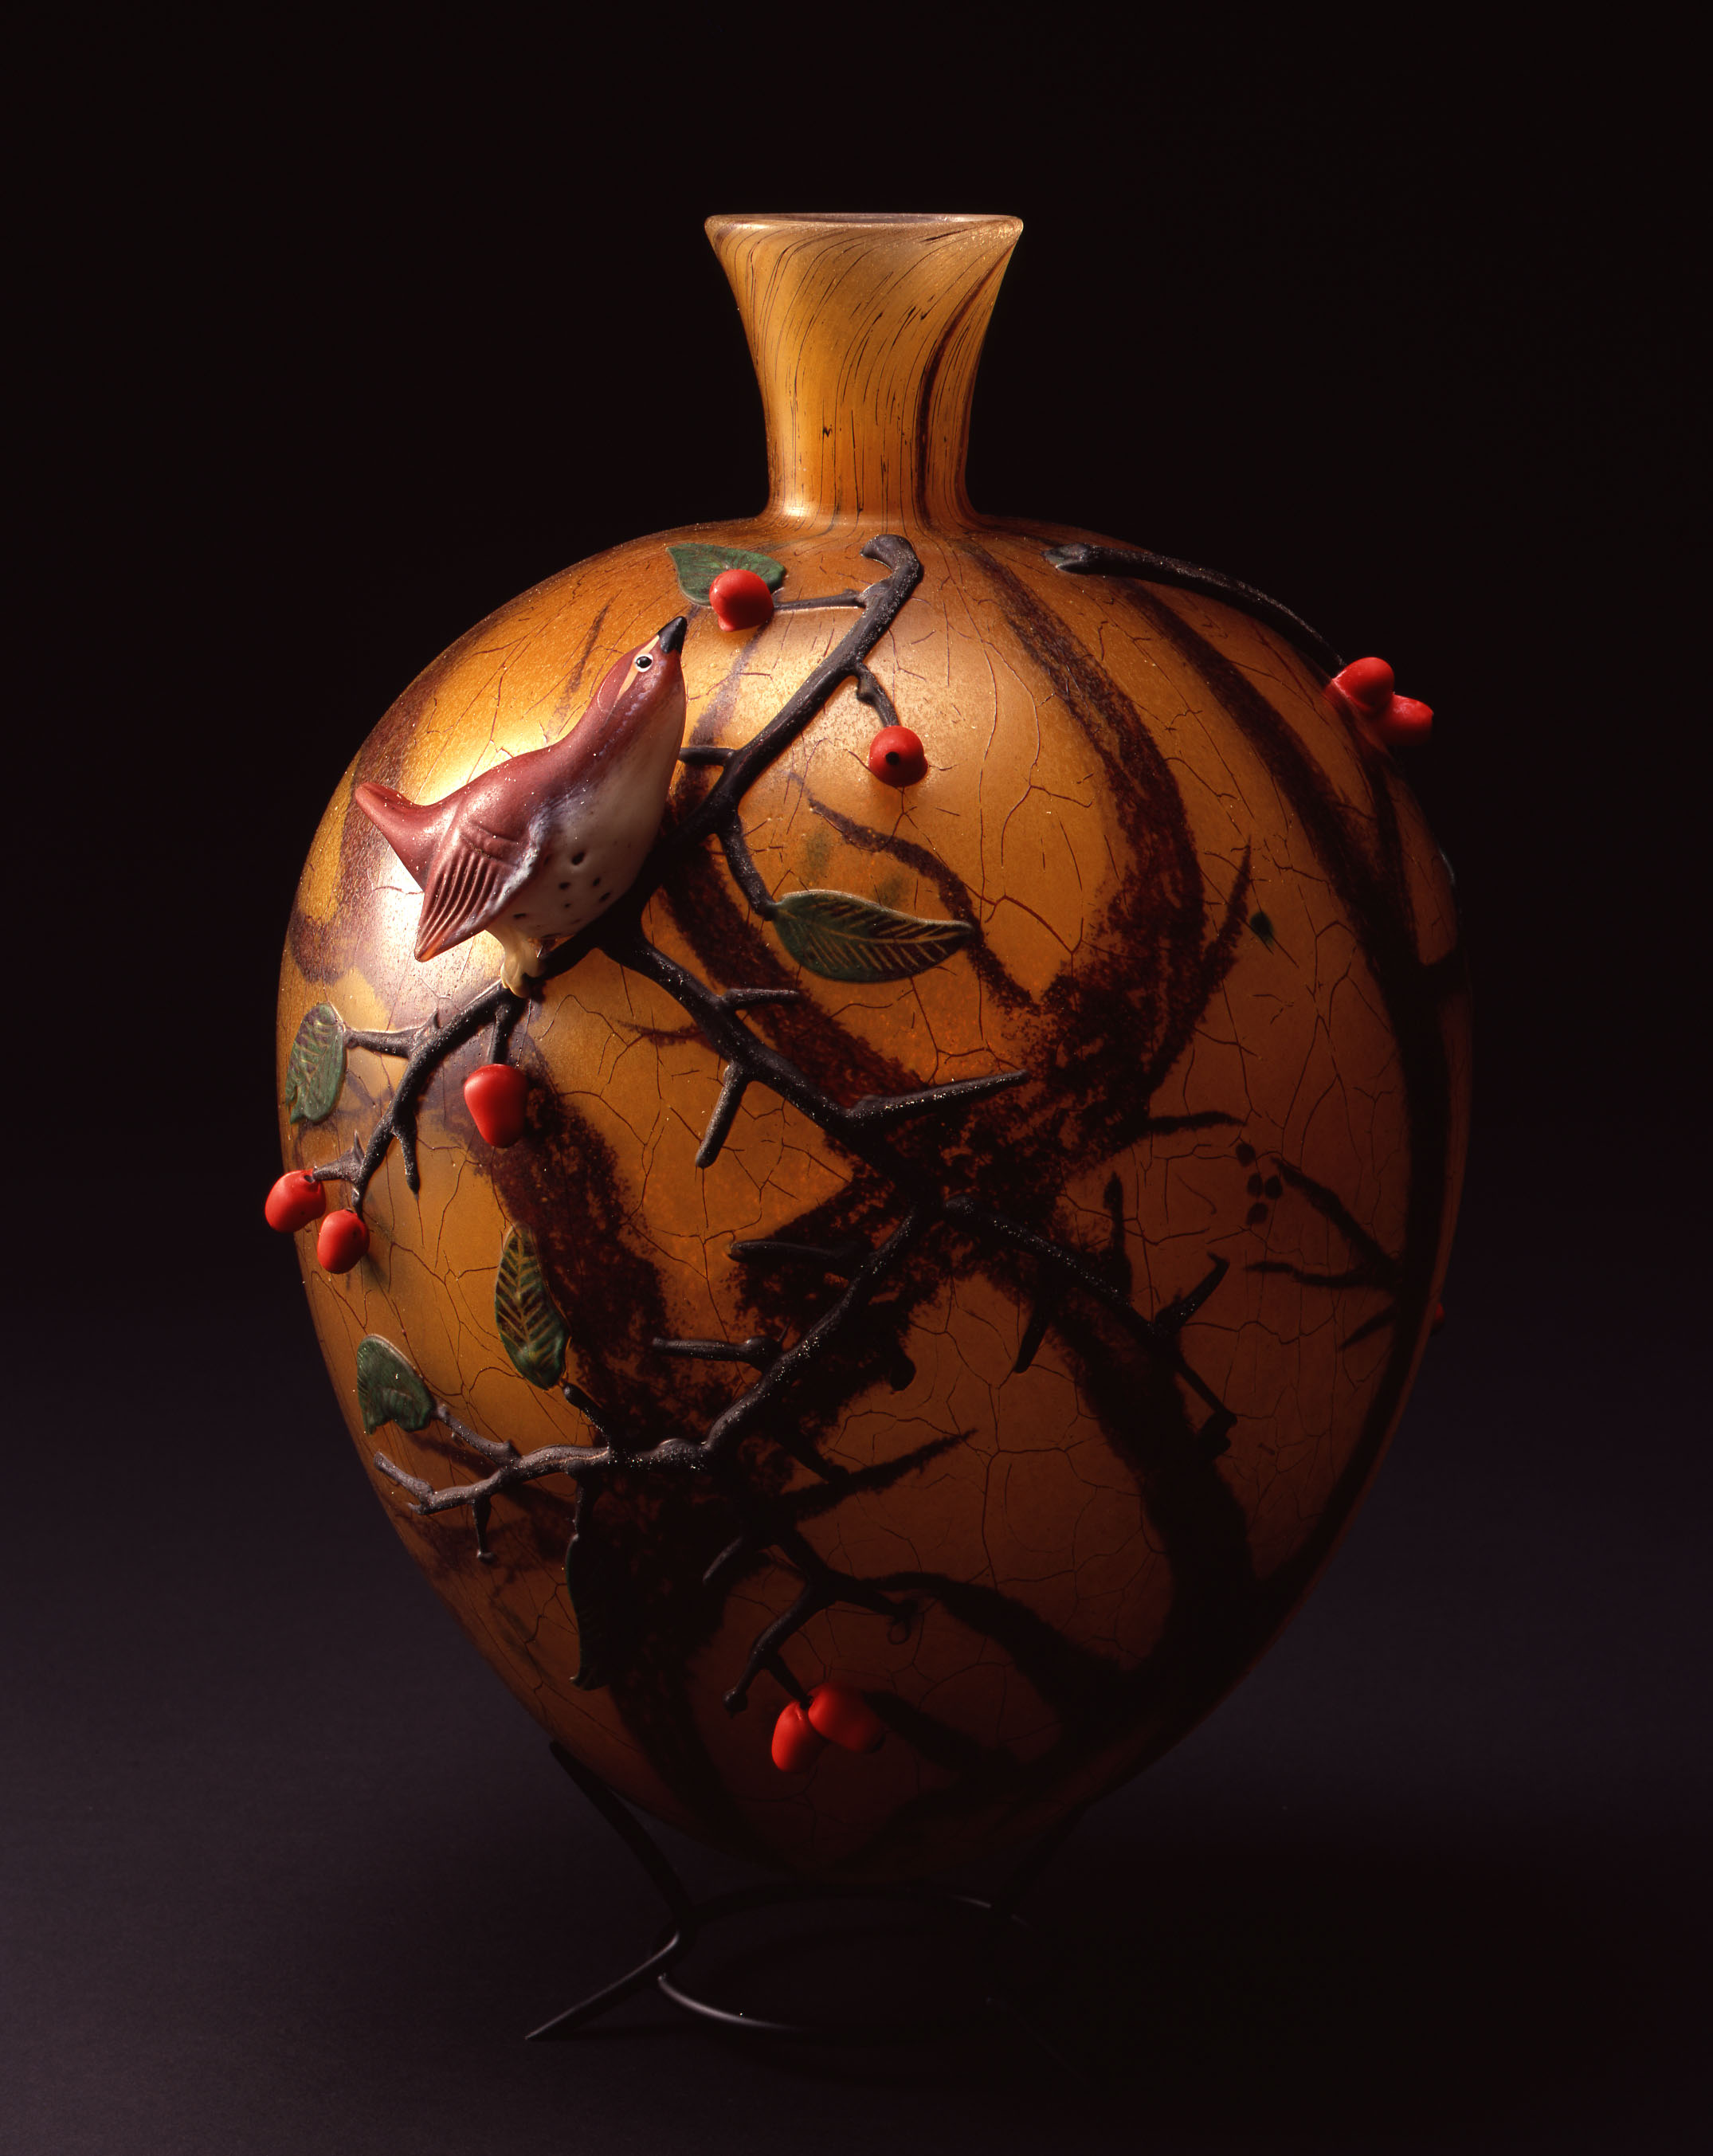  William Morris,&nbsp; Vase with Wren and Berries  &nbsp; (2004, glass, 10 x 8 3/8 x 7 1/2 inches), WM.49 